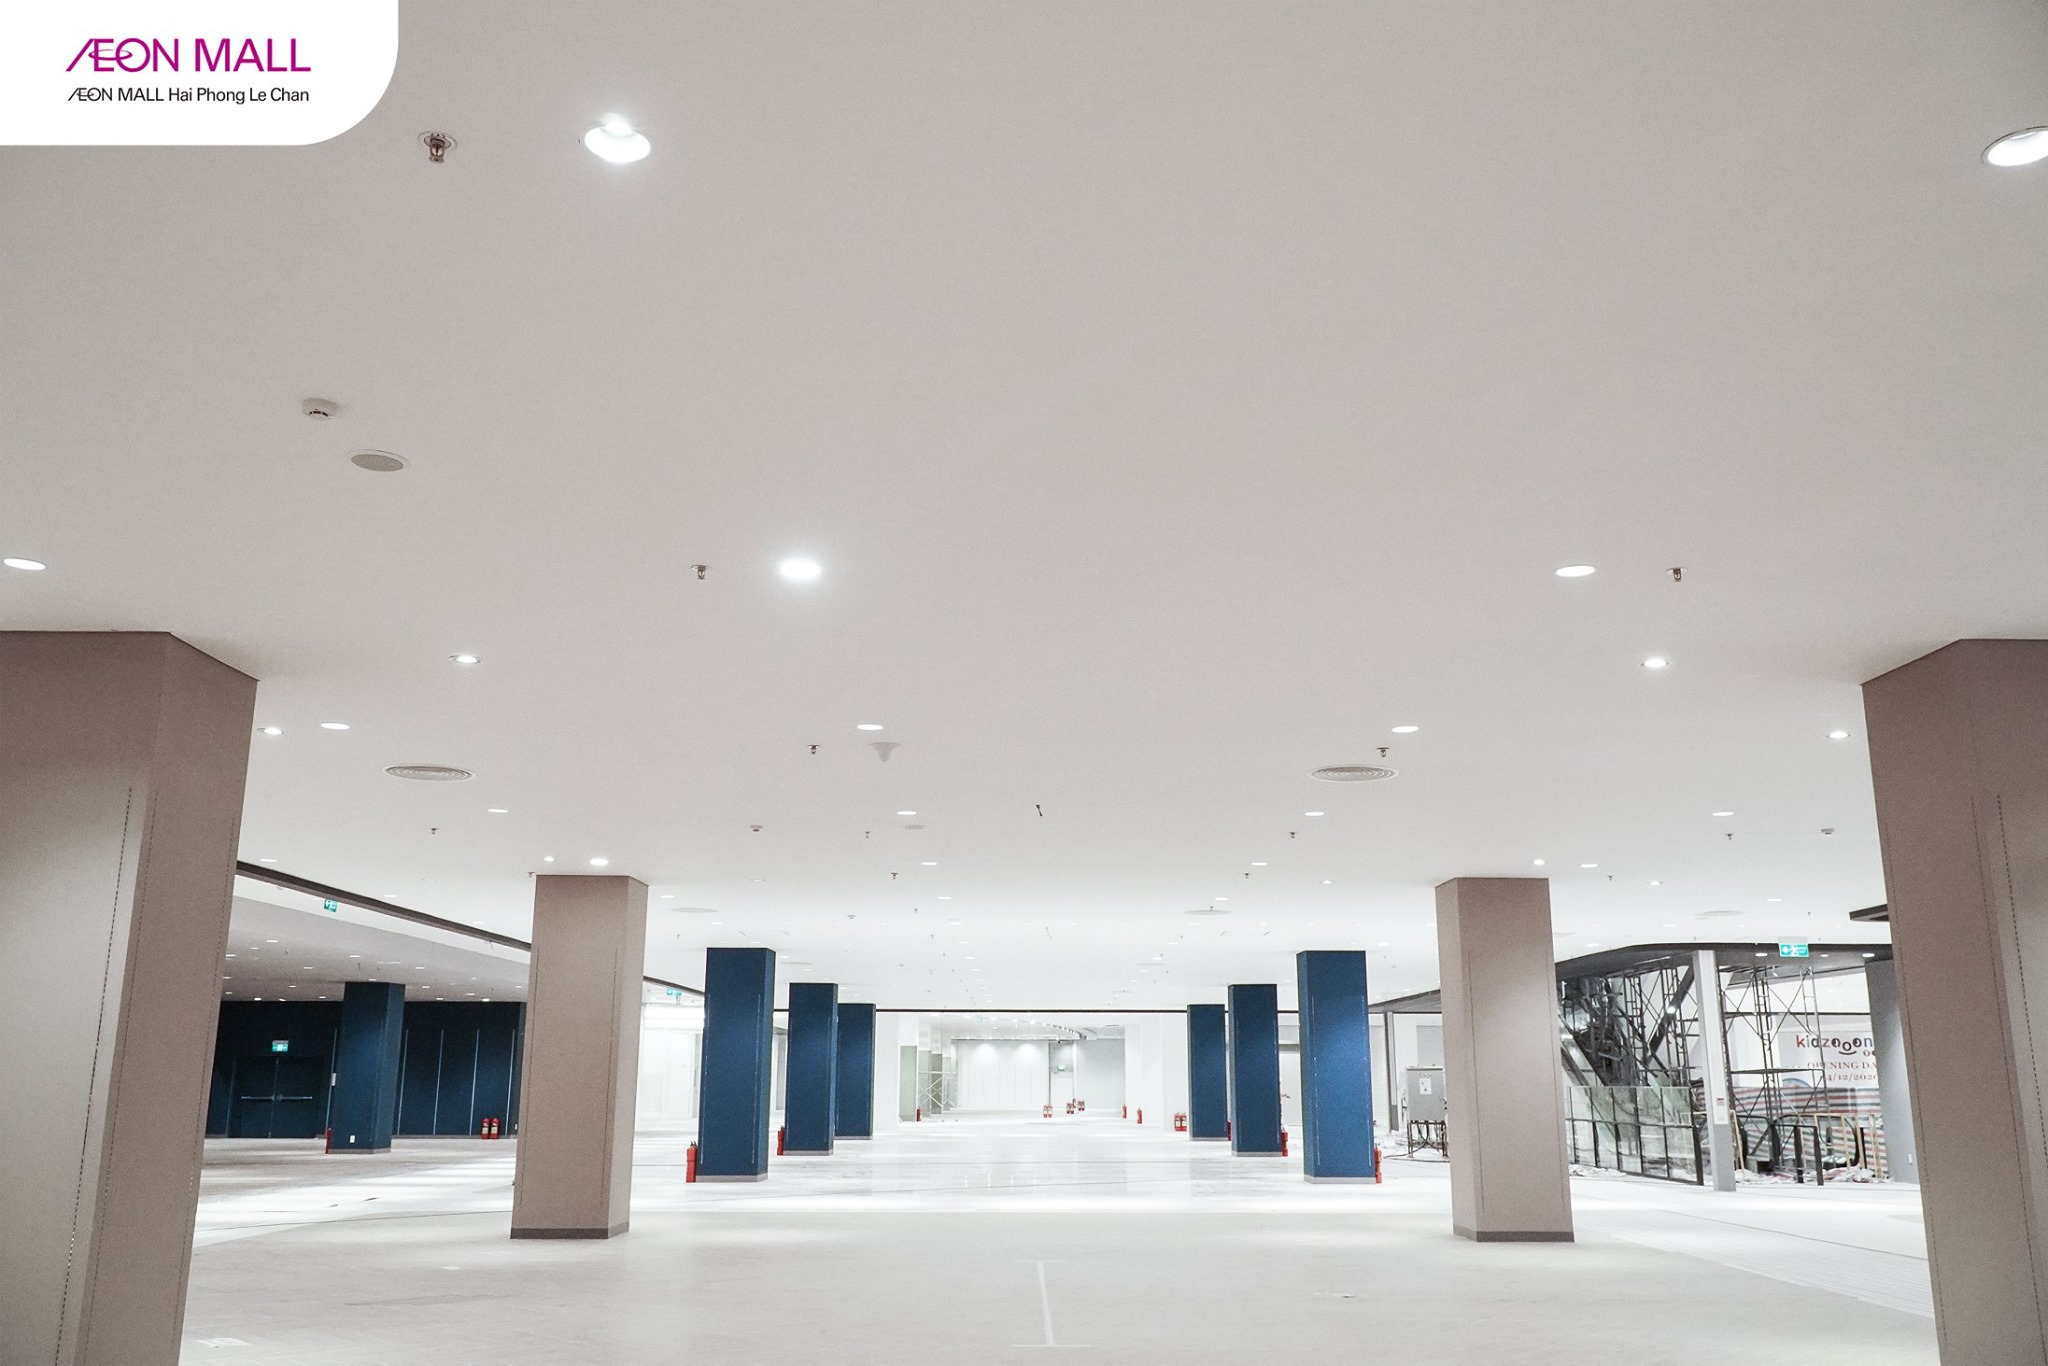 Với tổng diện tích mặt sàn hơn 152,000 m2, AEON MALL Hải Phòng Lê Chân dự kiến sẽ là TTTM lớn nhất Hải Phòng